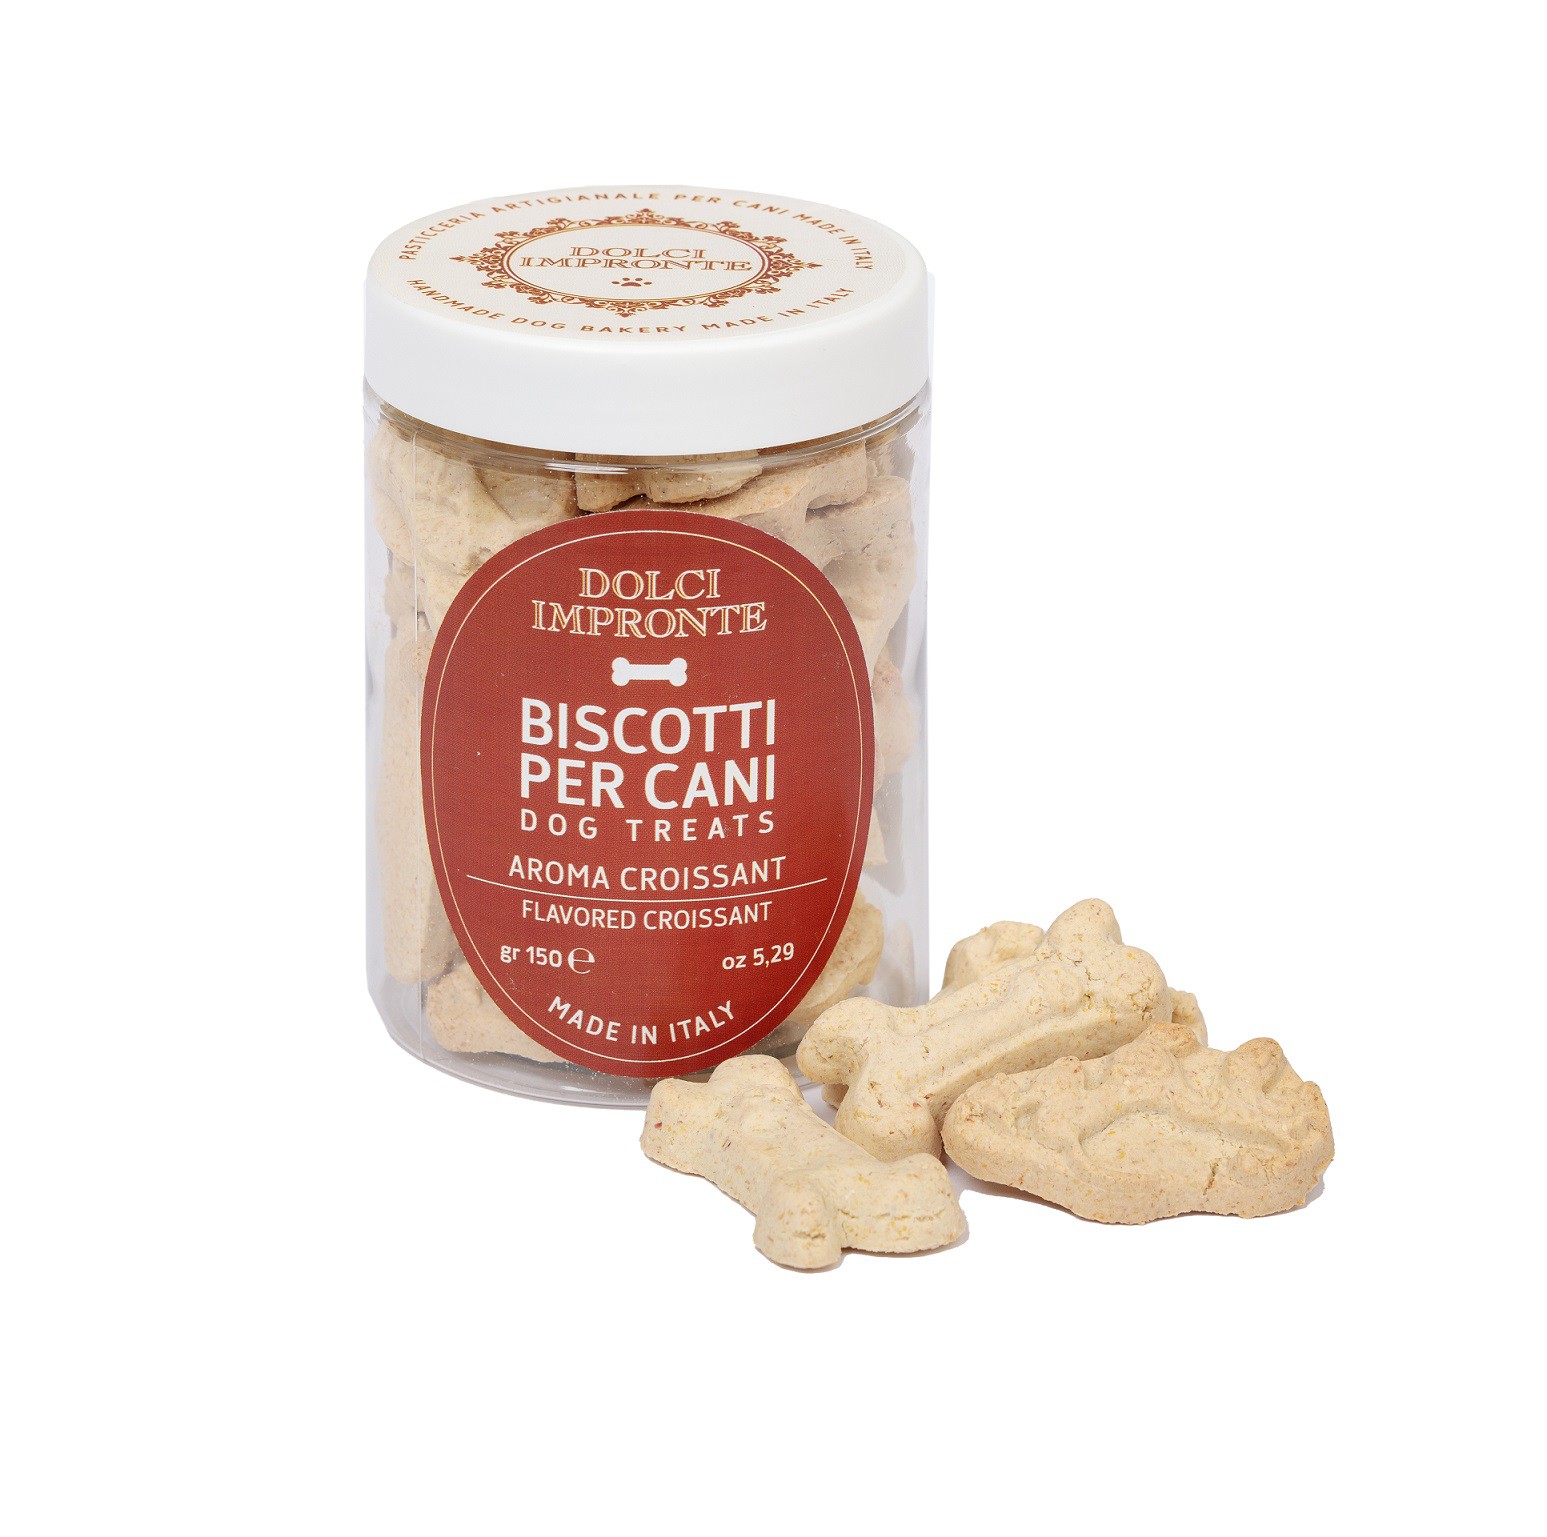 Biscotti per cani Aroma Brioche - Dolci impronte